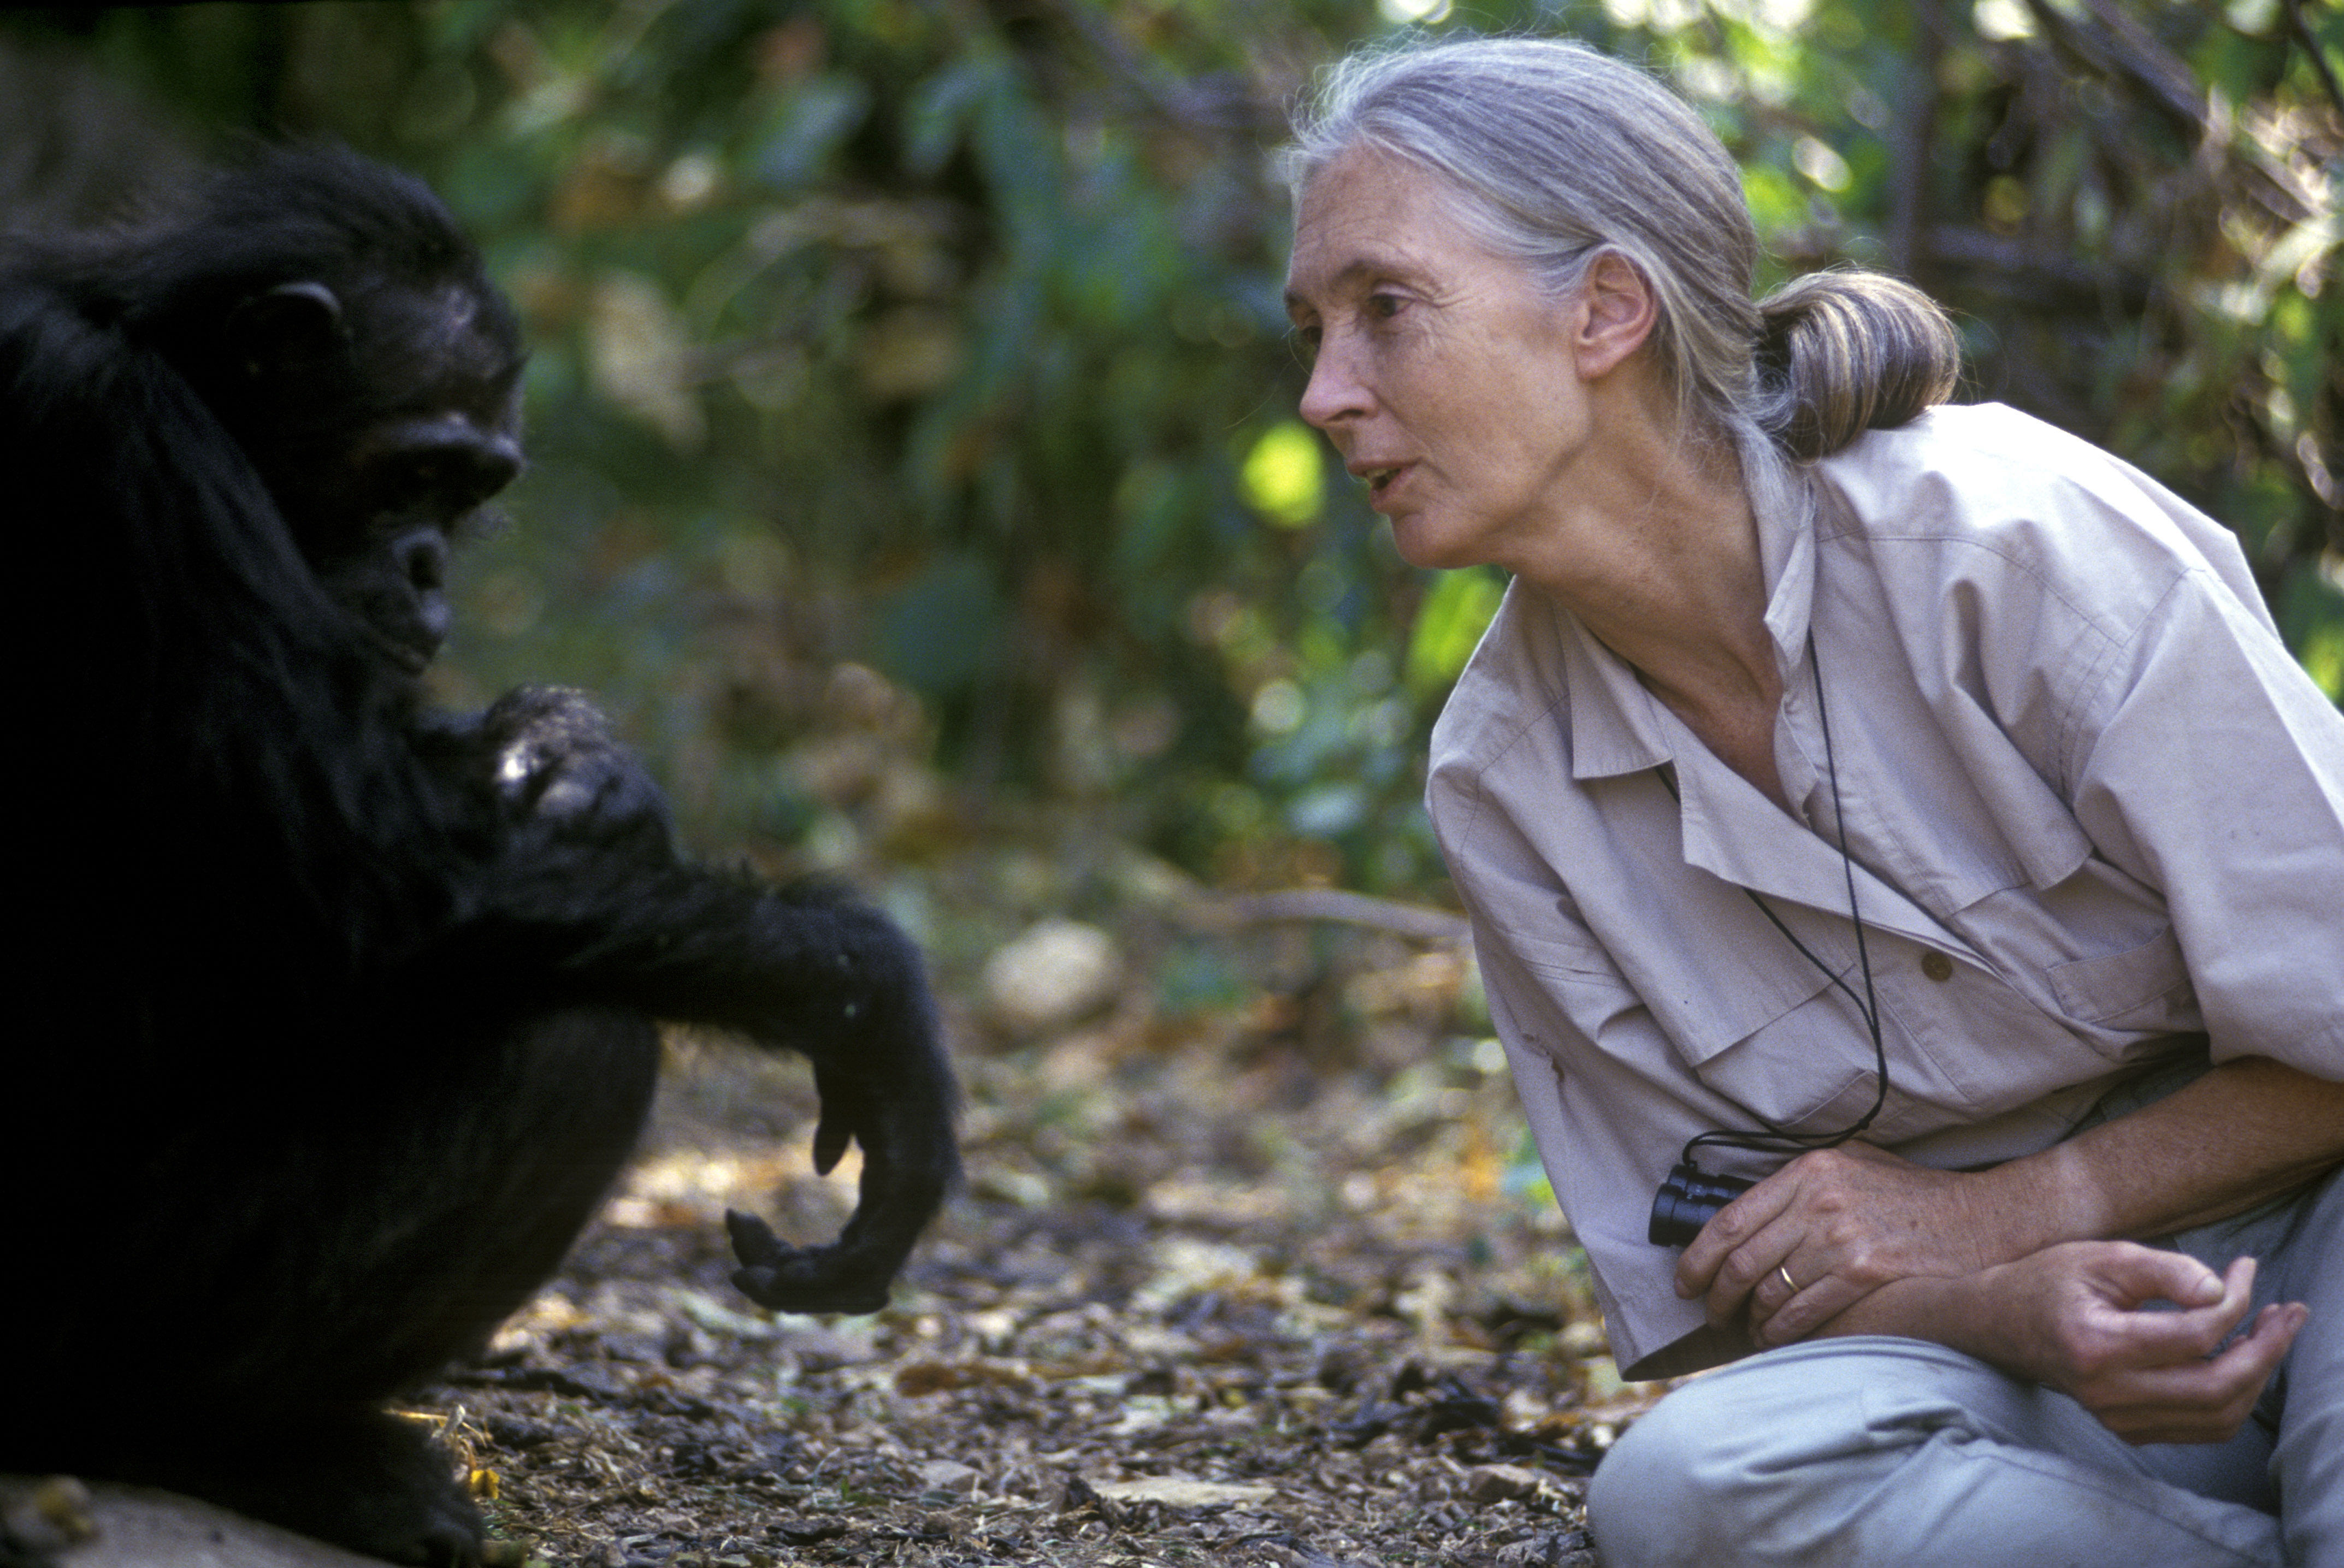 Egy neve feltüntetése nélkül lefotózott tanzániai csimpánz Jane Goodallal